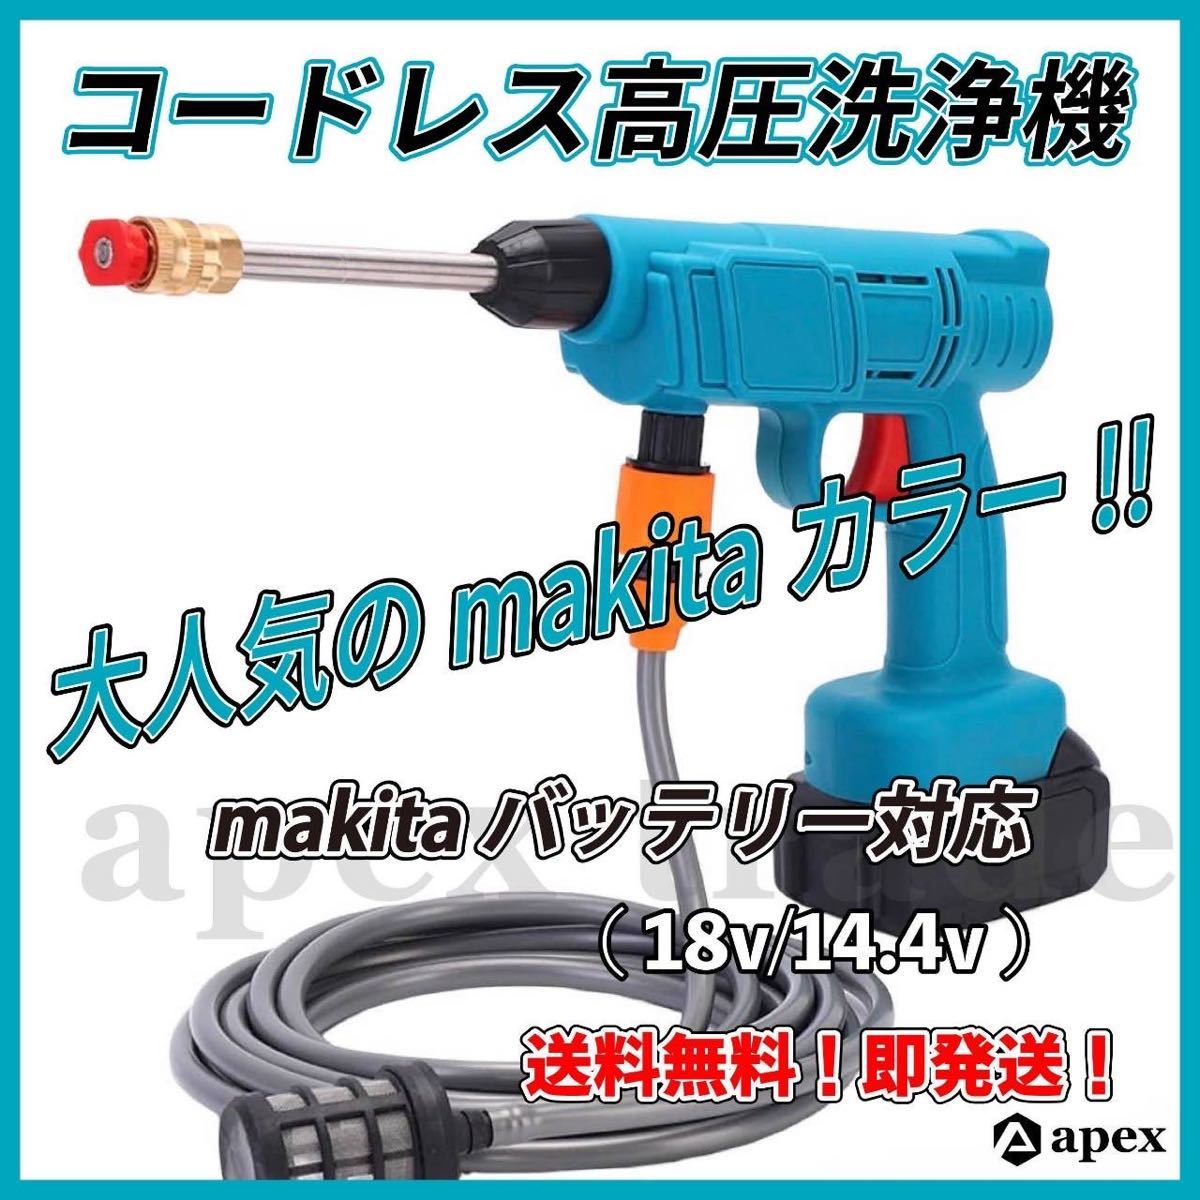 優れた品質 makita 互換 マキタ 高圧洗浄機 コードレス 充電式 無線 泡 洗車 A